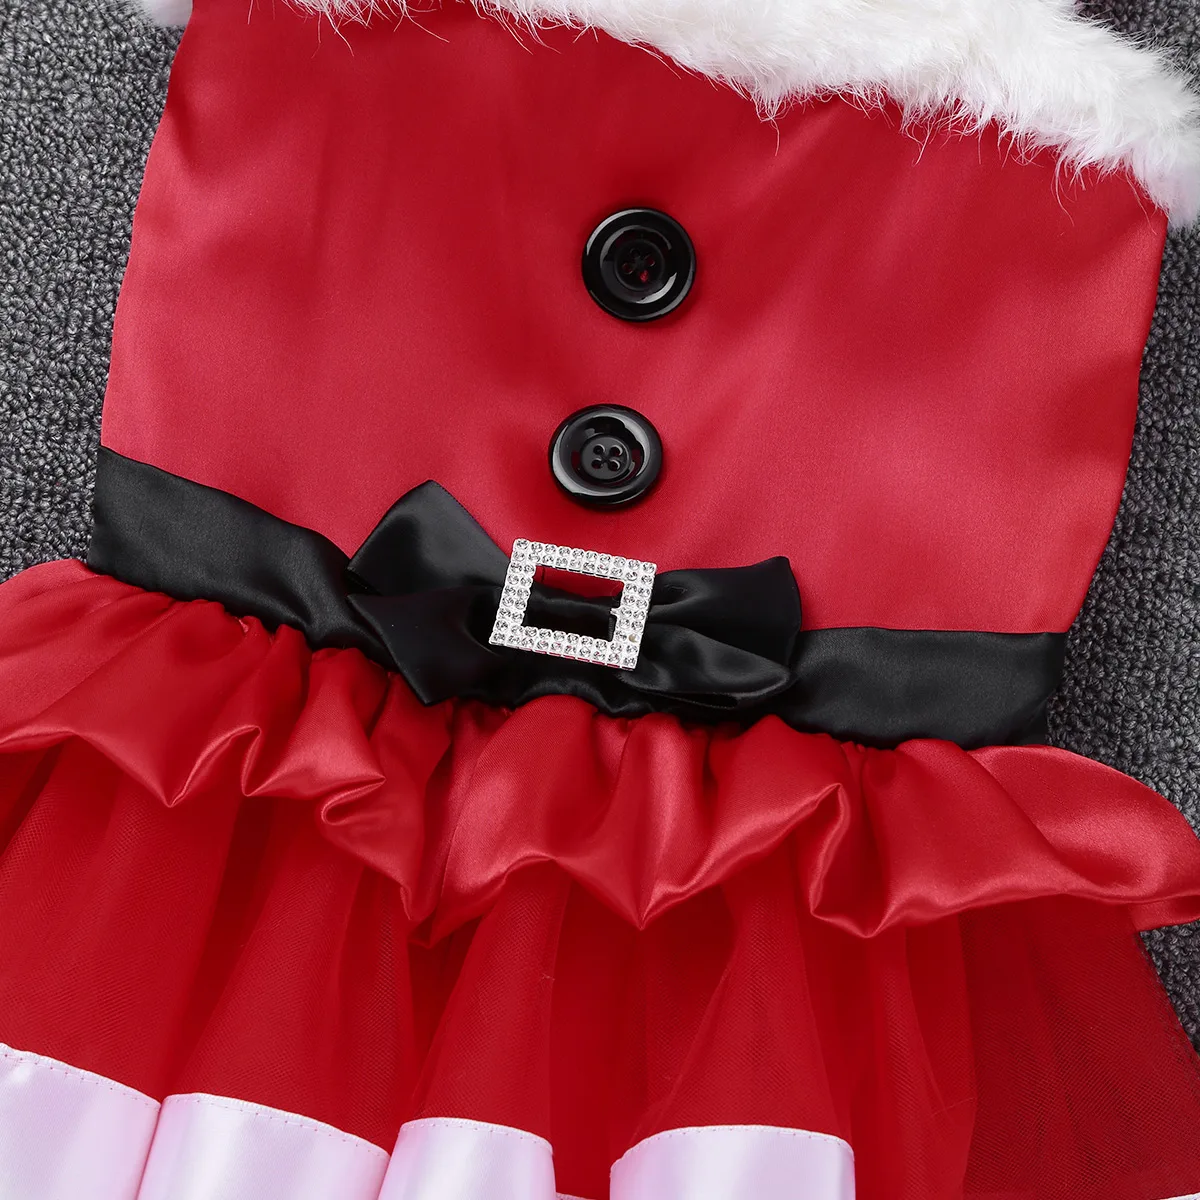 Нарядное красное рождественское платье для маленьких девочек на год; праздничная одежда для маленьких девочек; вечерние Детские костюмы принцессы из тюля на Рождество